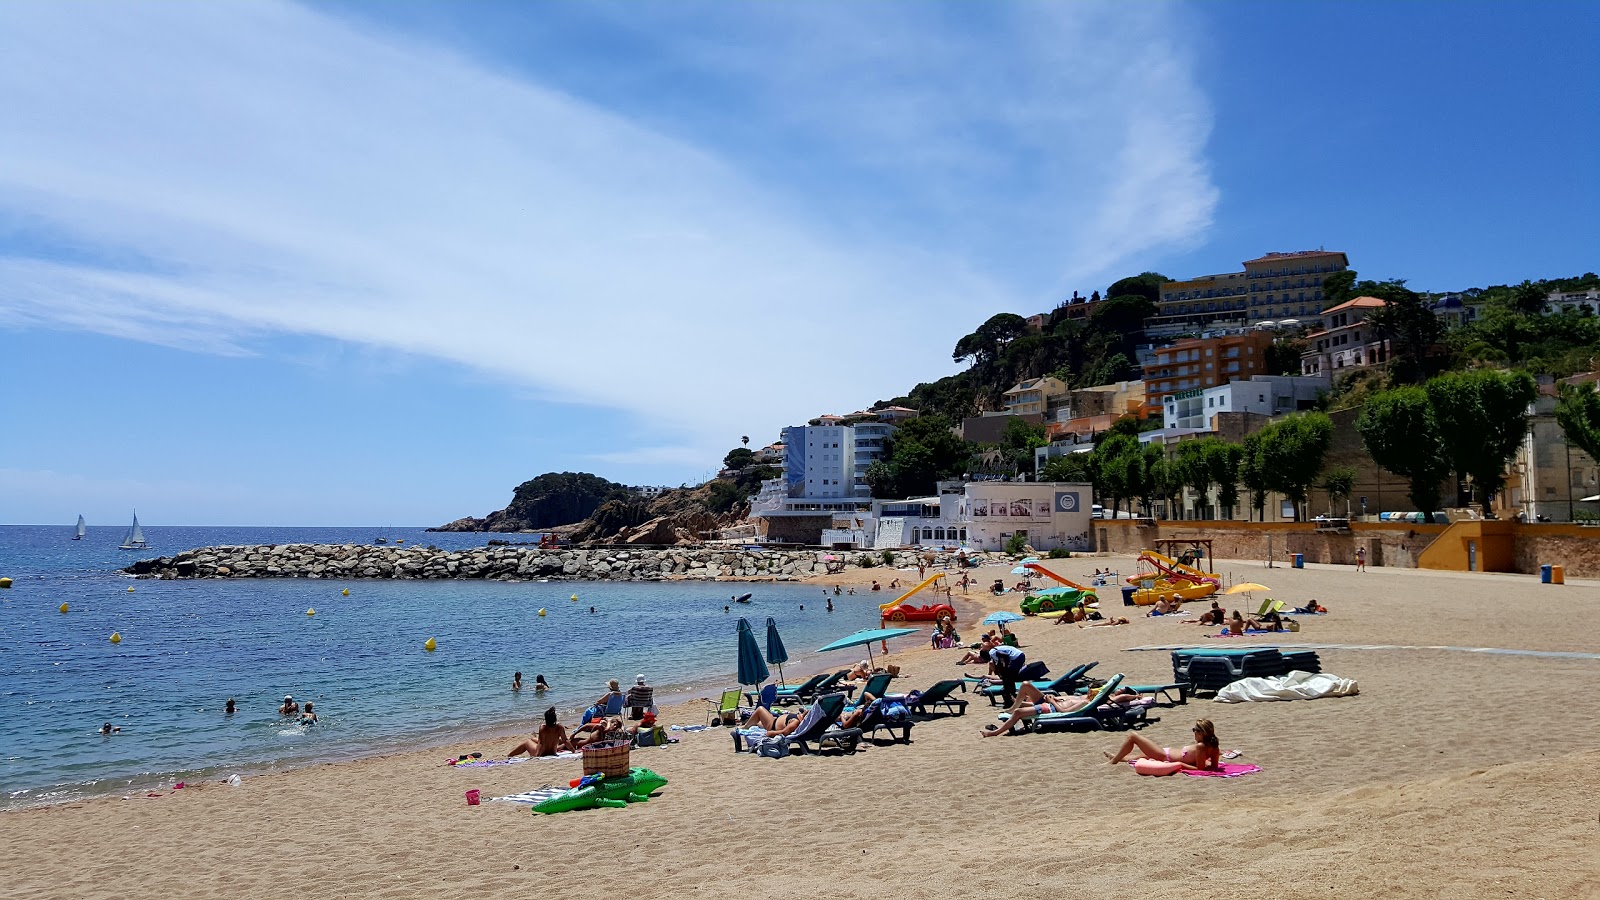 Fotografie cu Playa de Sant Feliu cu o suprafață de apa pură turcoaz